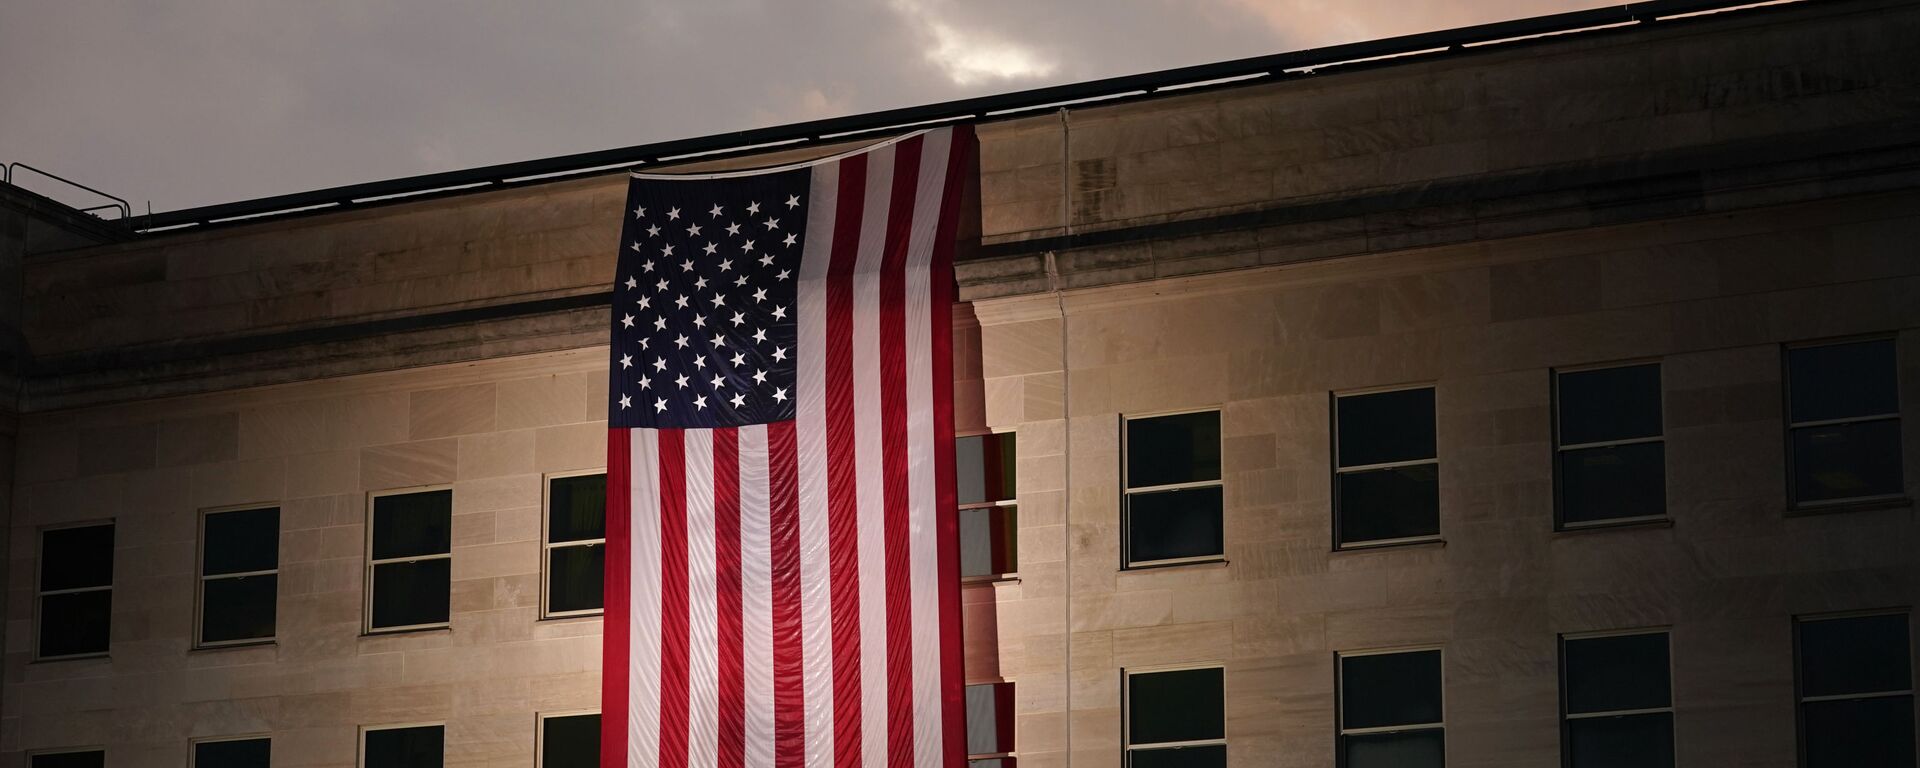 Здание Пентагона с флагом США в память о жертвах трагедии 11 сентября - Sputnik Србија, 1920, 20.08.2022